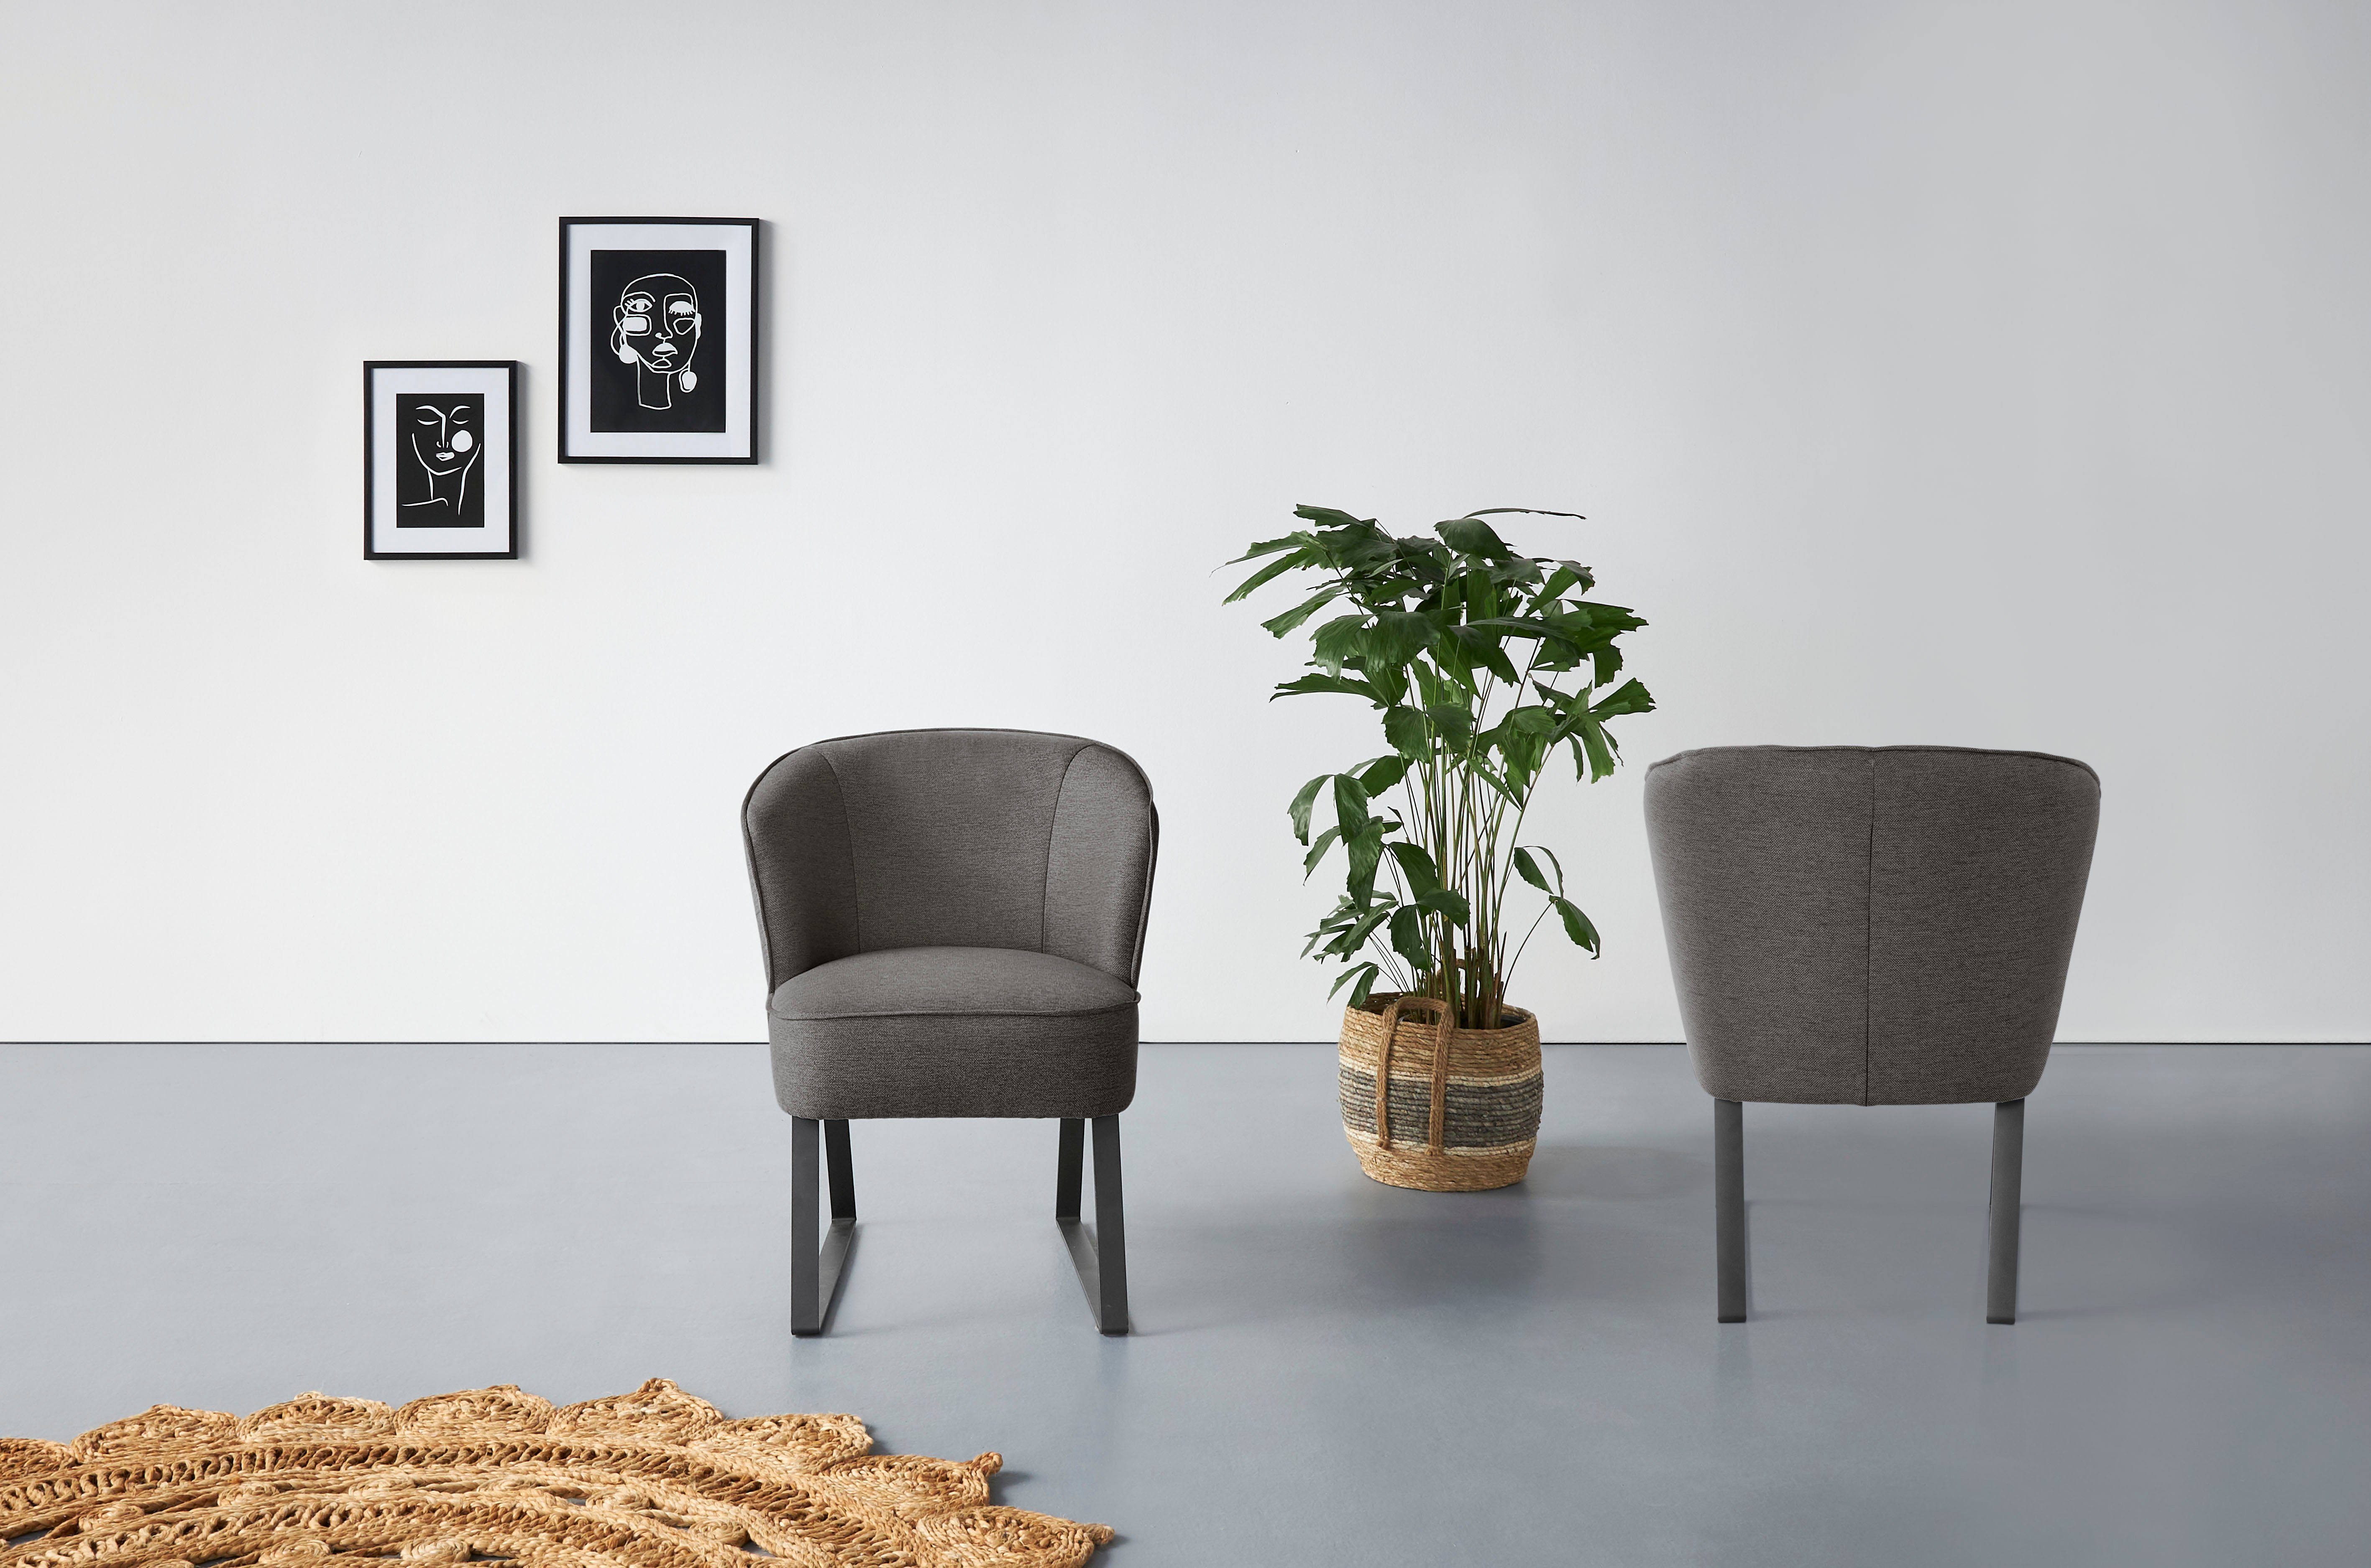 exxpo - sofa fashion Sessel Qualitäten, Americano, Stck. und Keder in 1 mit verschiedenen Bezug Metallfüßen